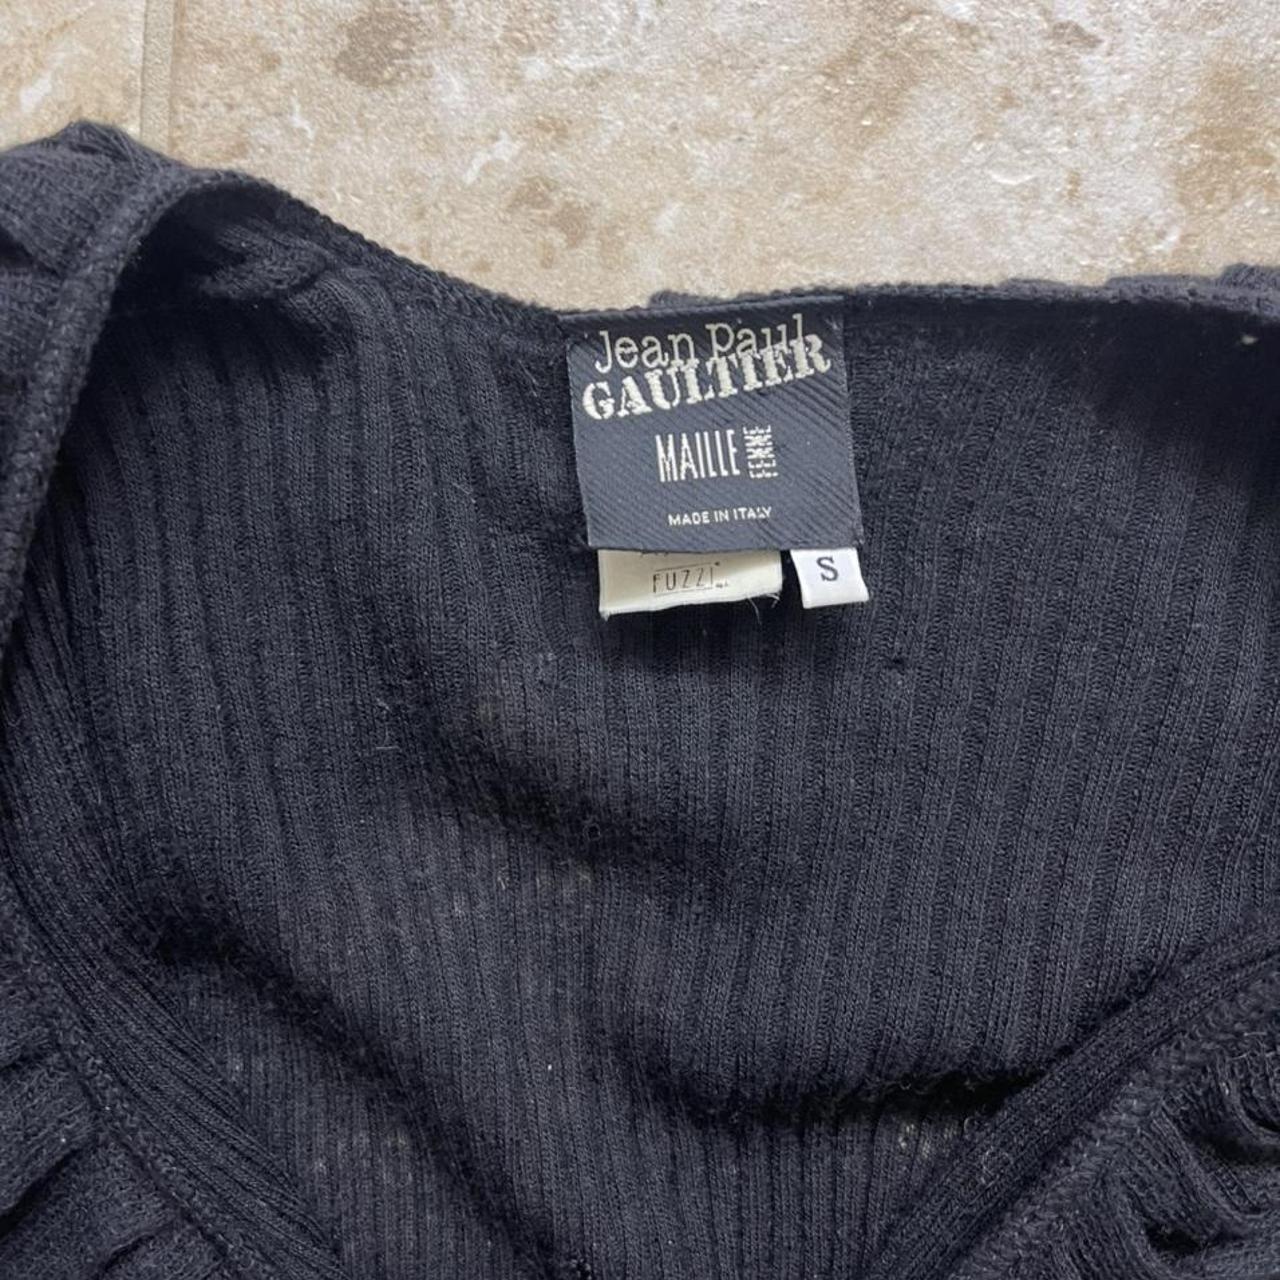 Gaultier Jeans Women's Shirt (2)